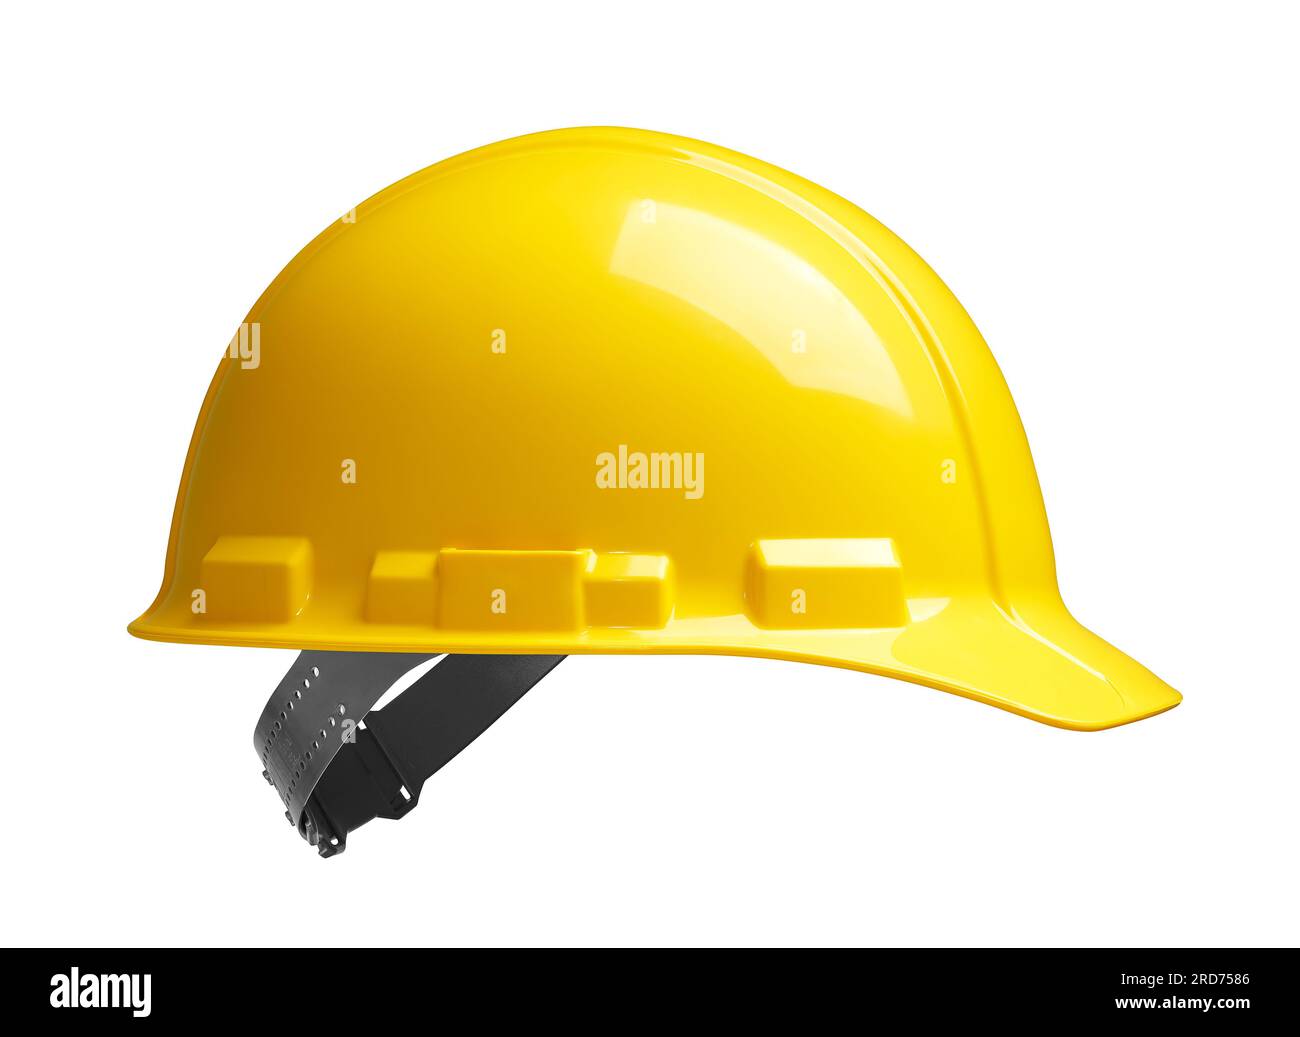 Vue latérale du casque de sécurité jaune isolé - chemin de coupe inclus Banque D'Images